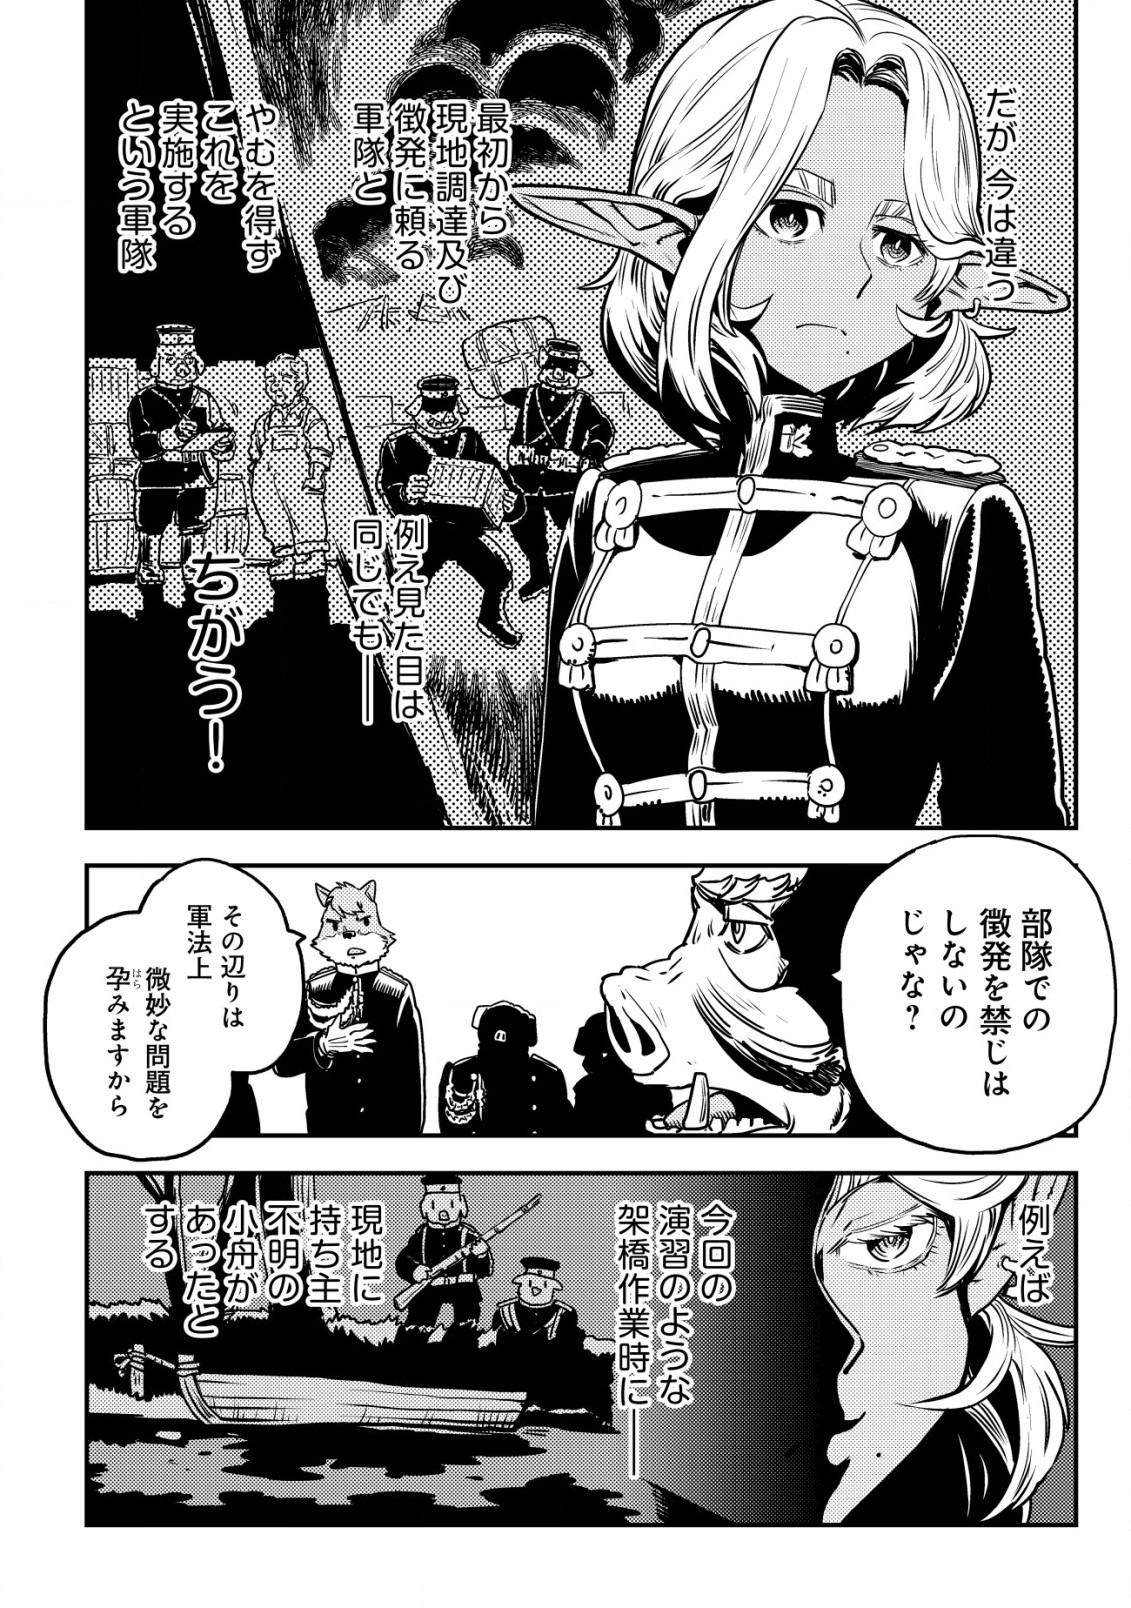 Orcsen Oukokushi – Yaban na Ooku no Kuni wa, Ikanishite Heiwa na Elf no Kuni wo Yakiharau ni Itatta ka - Chapter 5.2 - Page 13